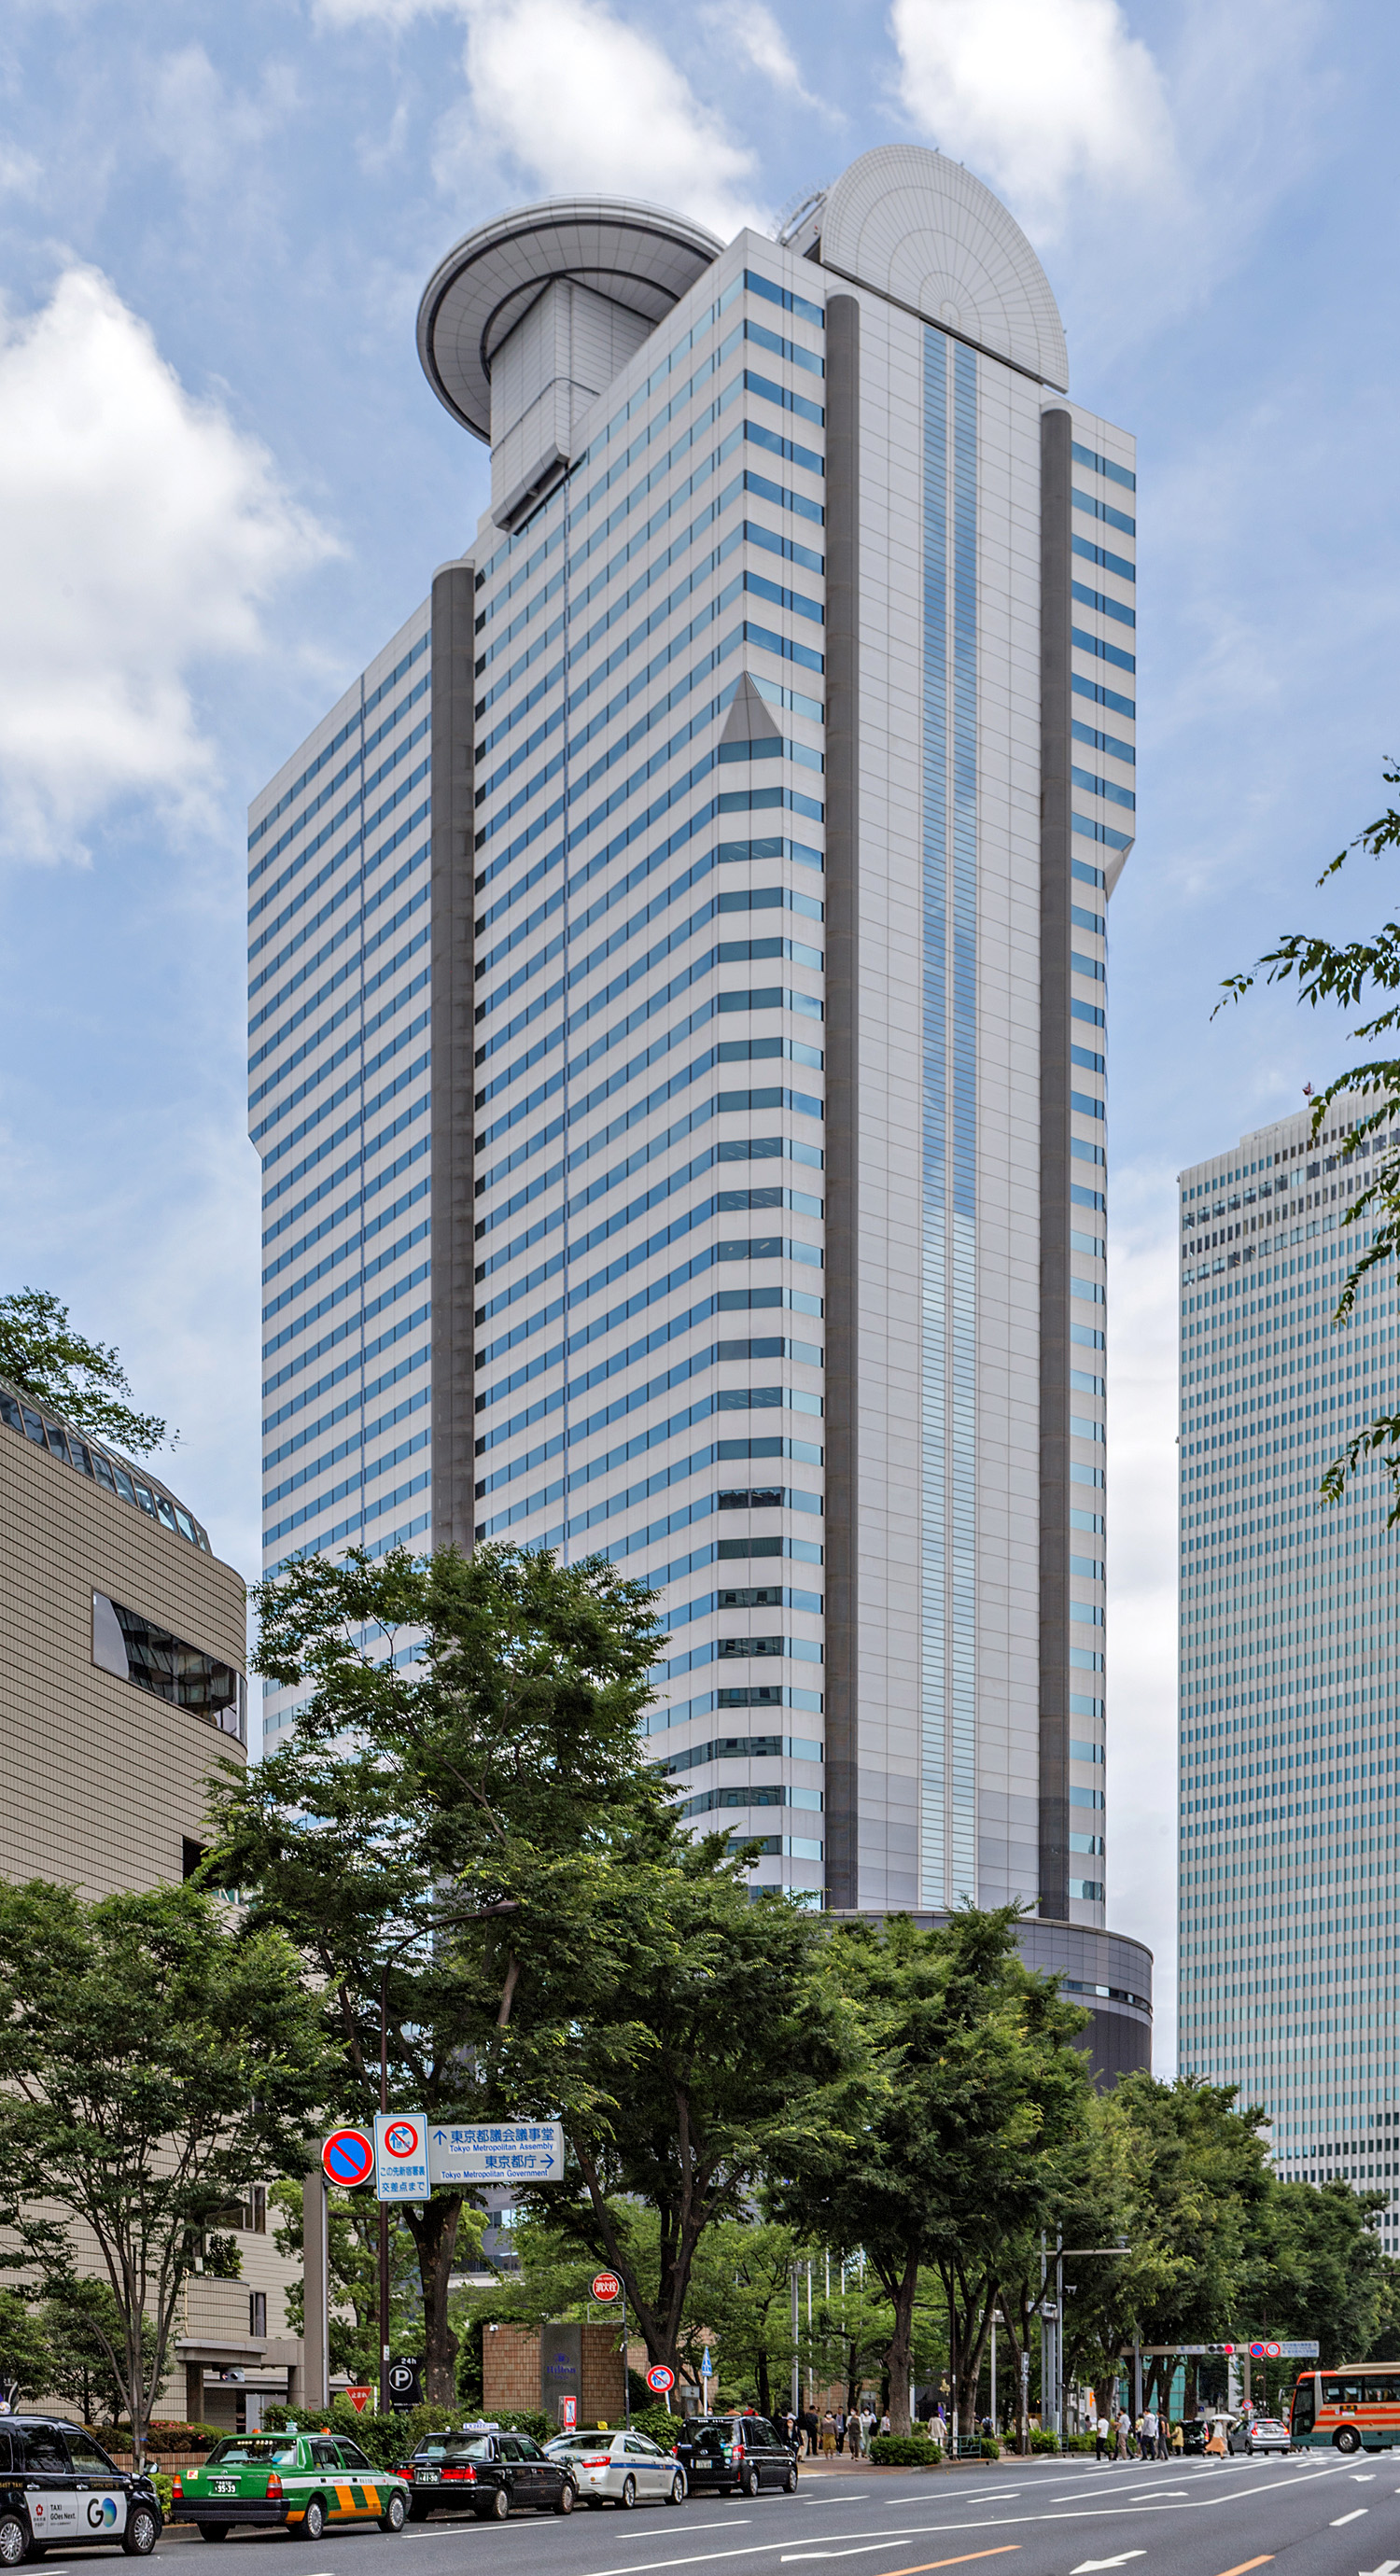 Shinjuku I-Land Tower, Tokyo - View from the southwest. © Mathias Beinling